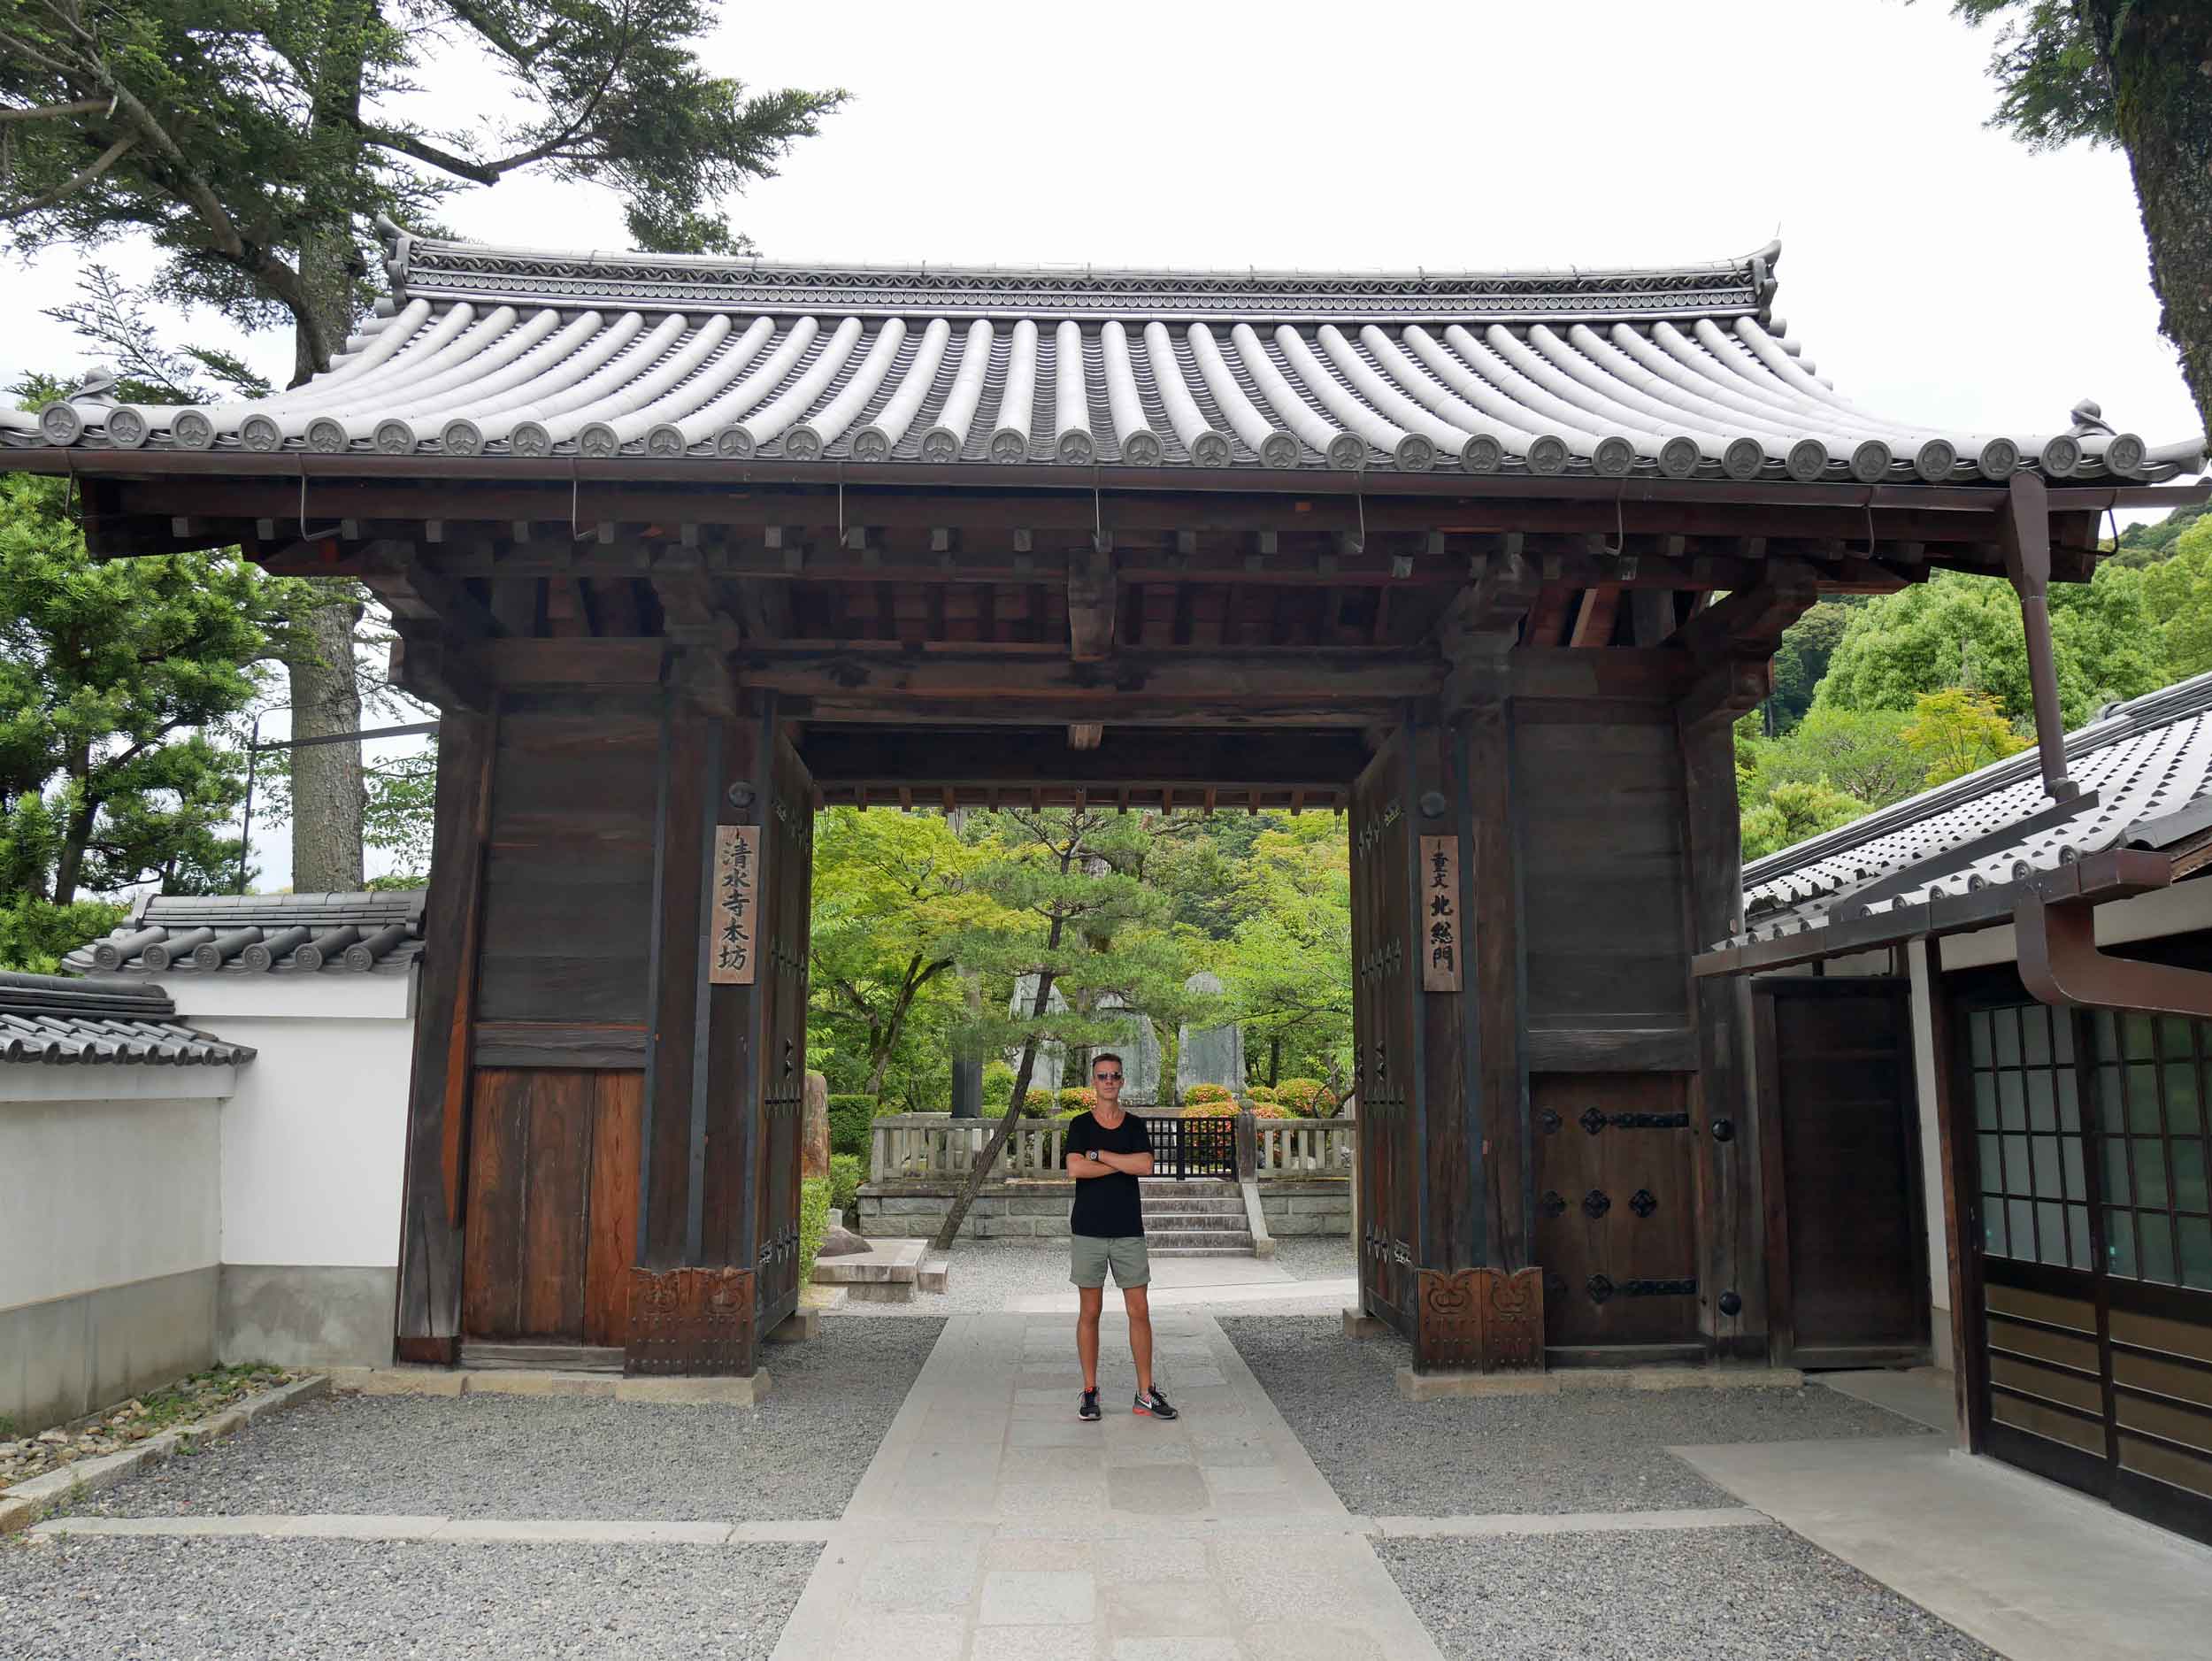  Gate to Kiyomizu-dera Temple complex.&nbsp; 